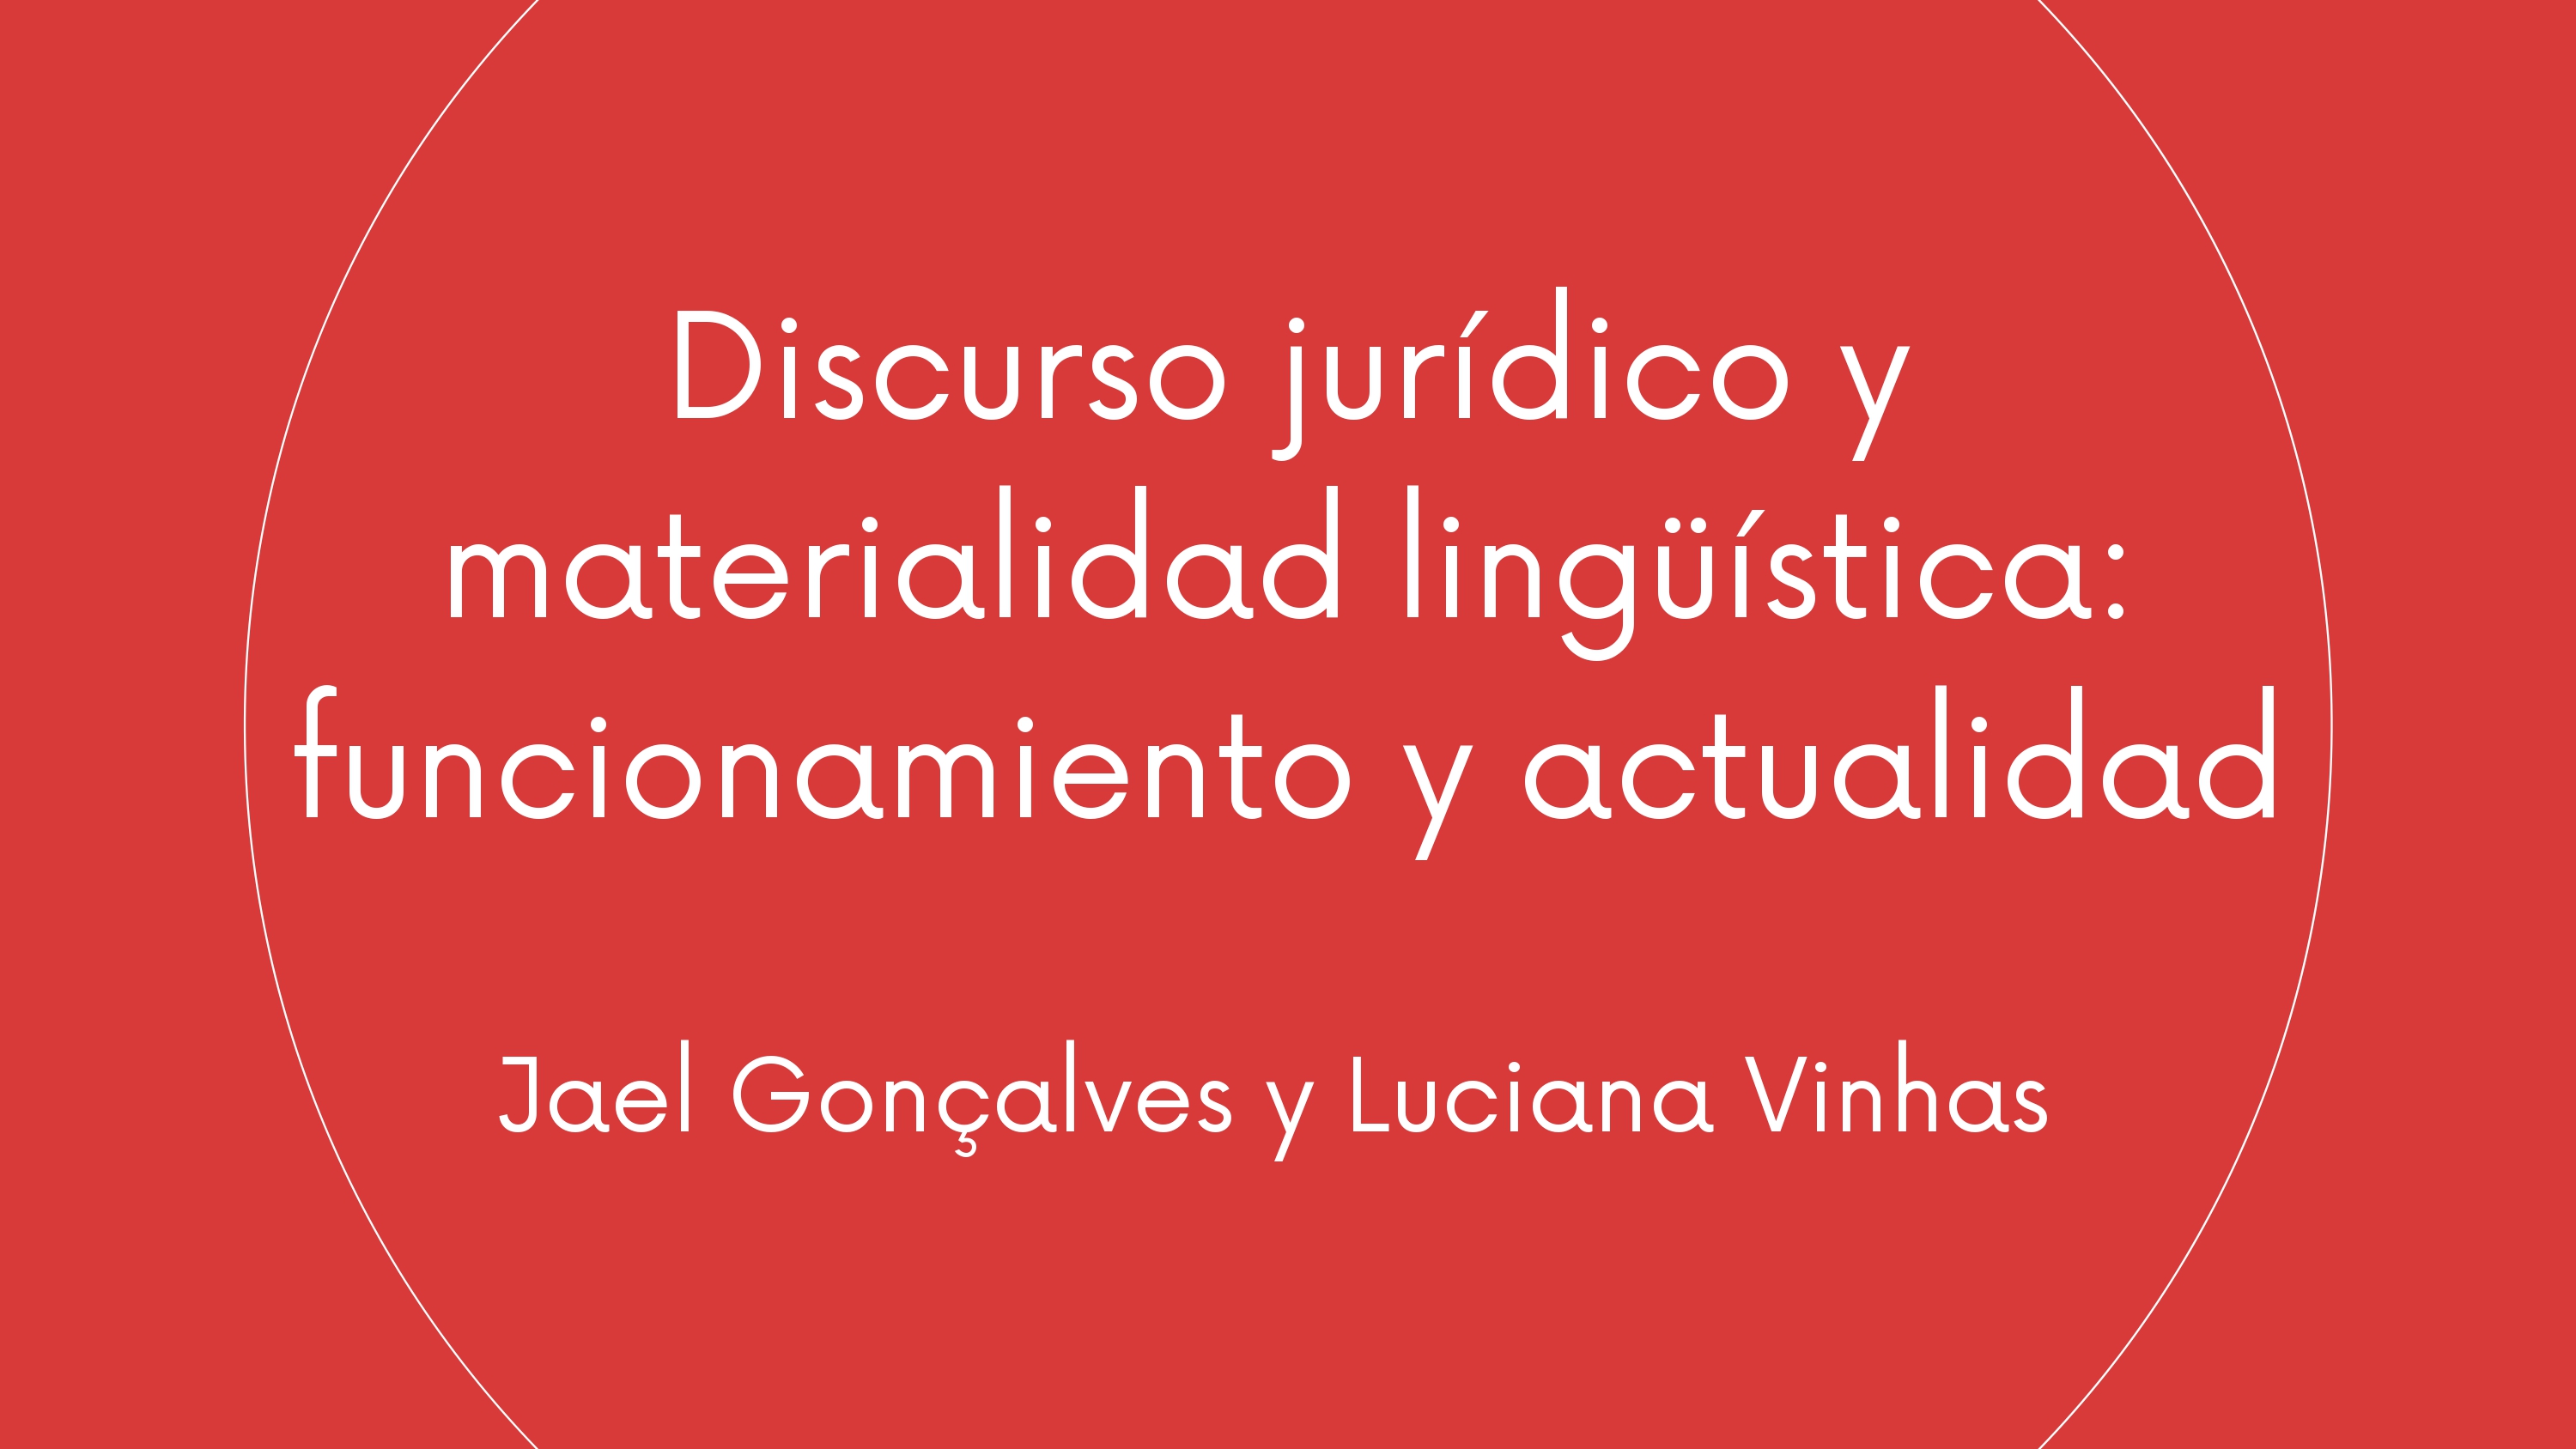 Discurso jurídico y materialidad lingüística funcionamiento y actualidad